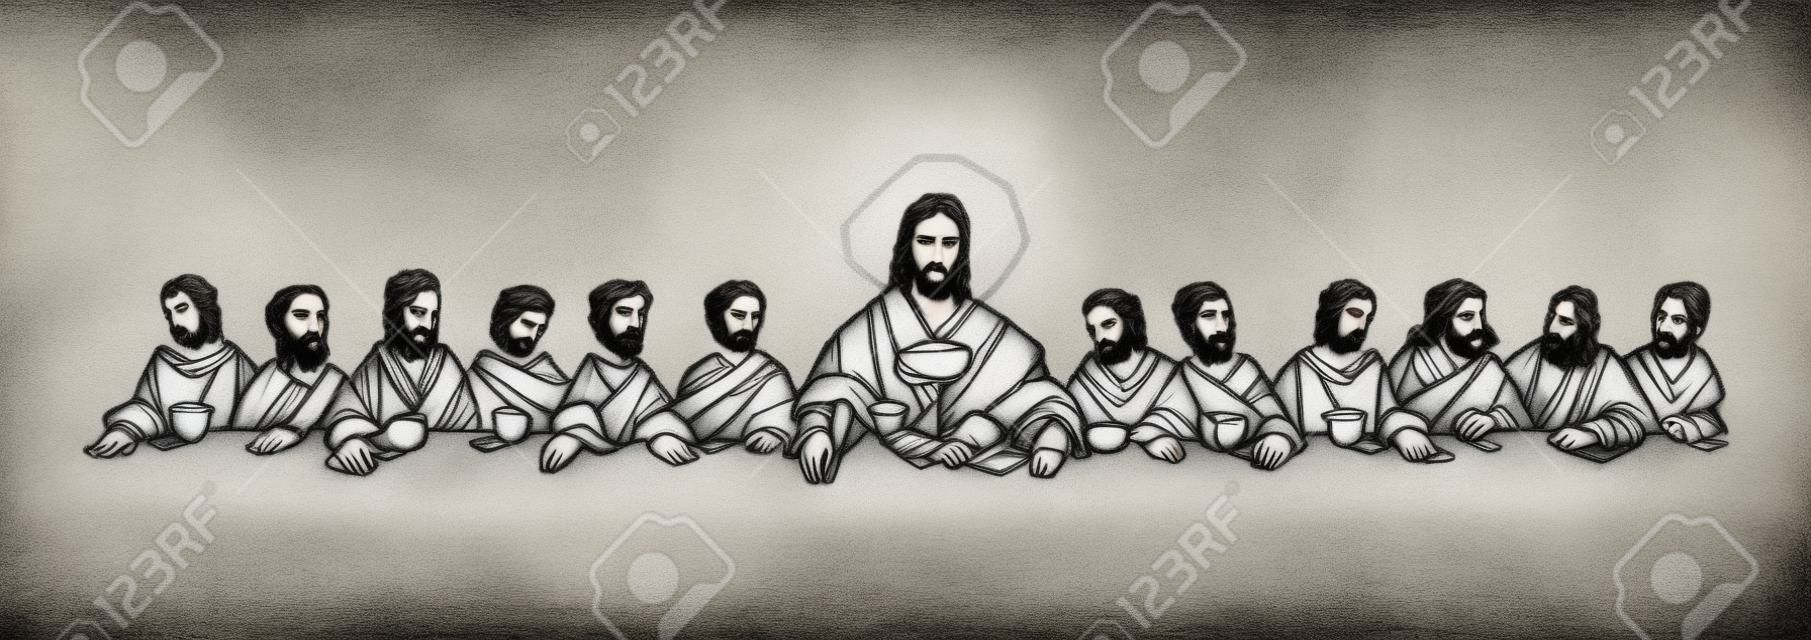 Ręcznie rysowana ilustracja lub rysunek Jezusa Chrystusa z uczniami na ostatniej wieczerzy